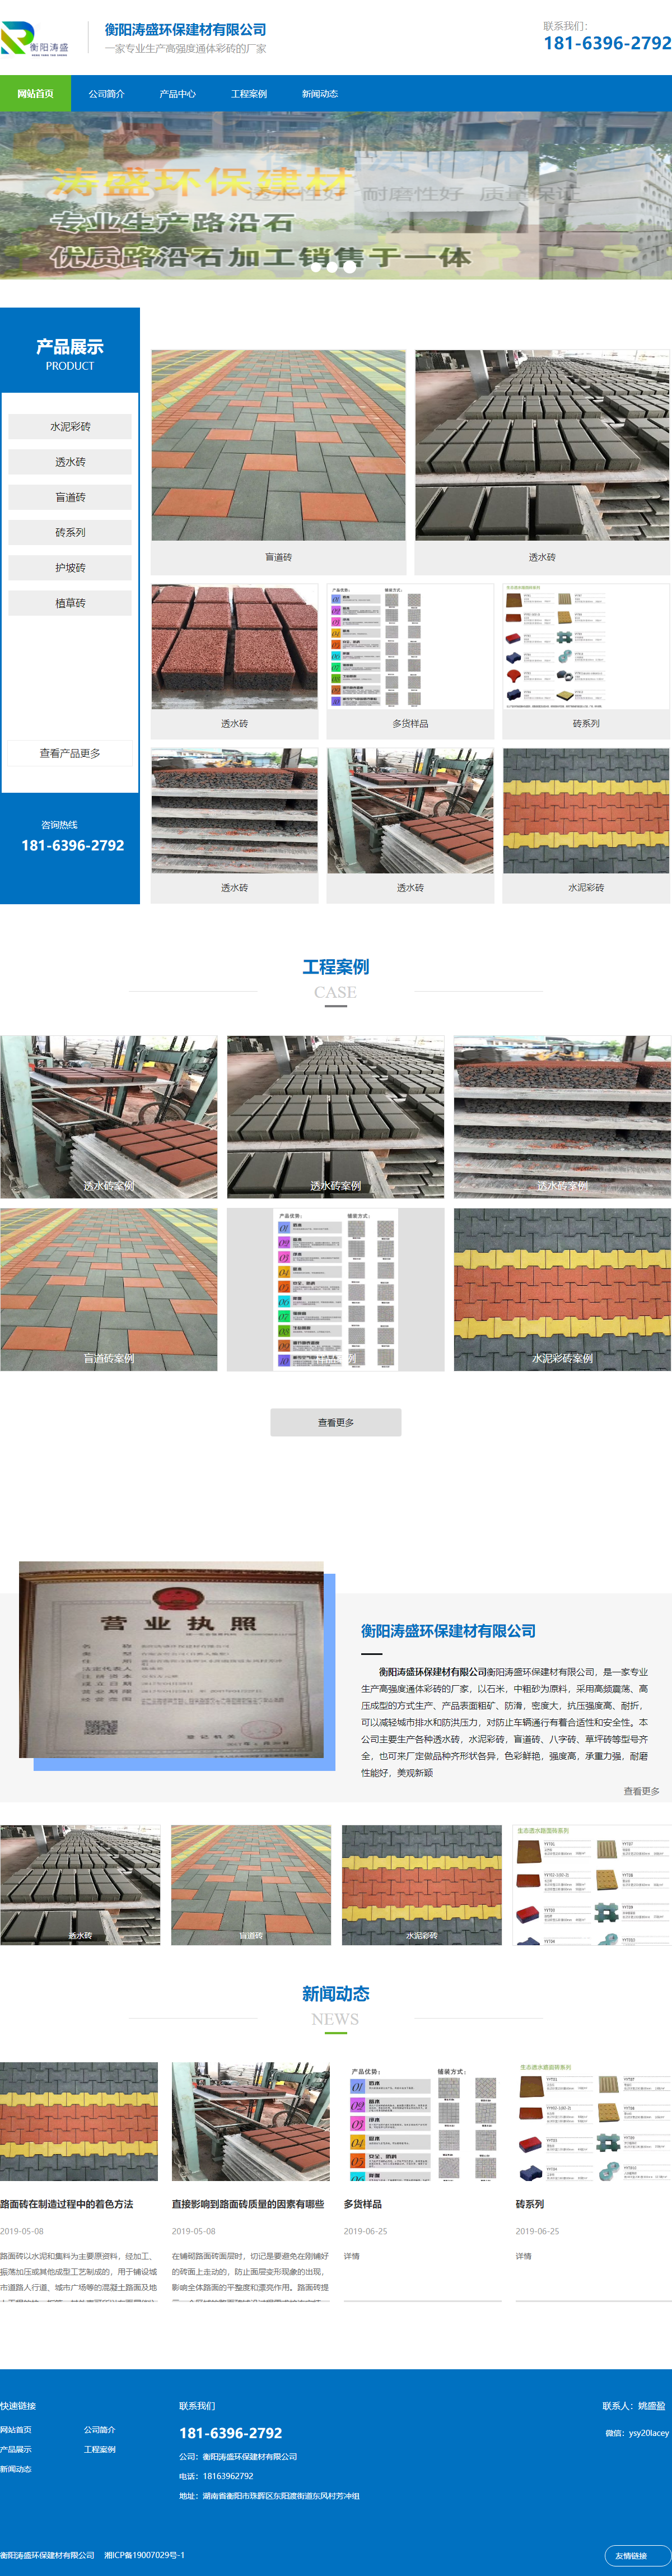 衡阳涛盛环保建材有限公司网站案例